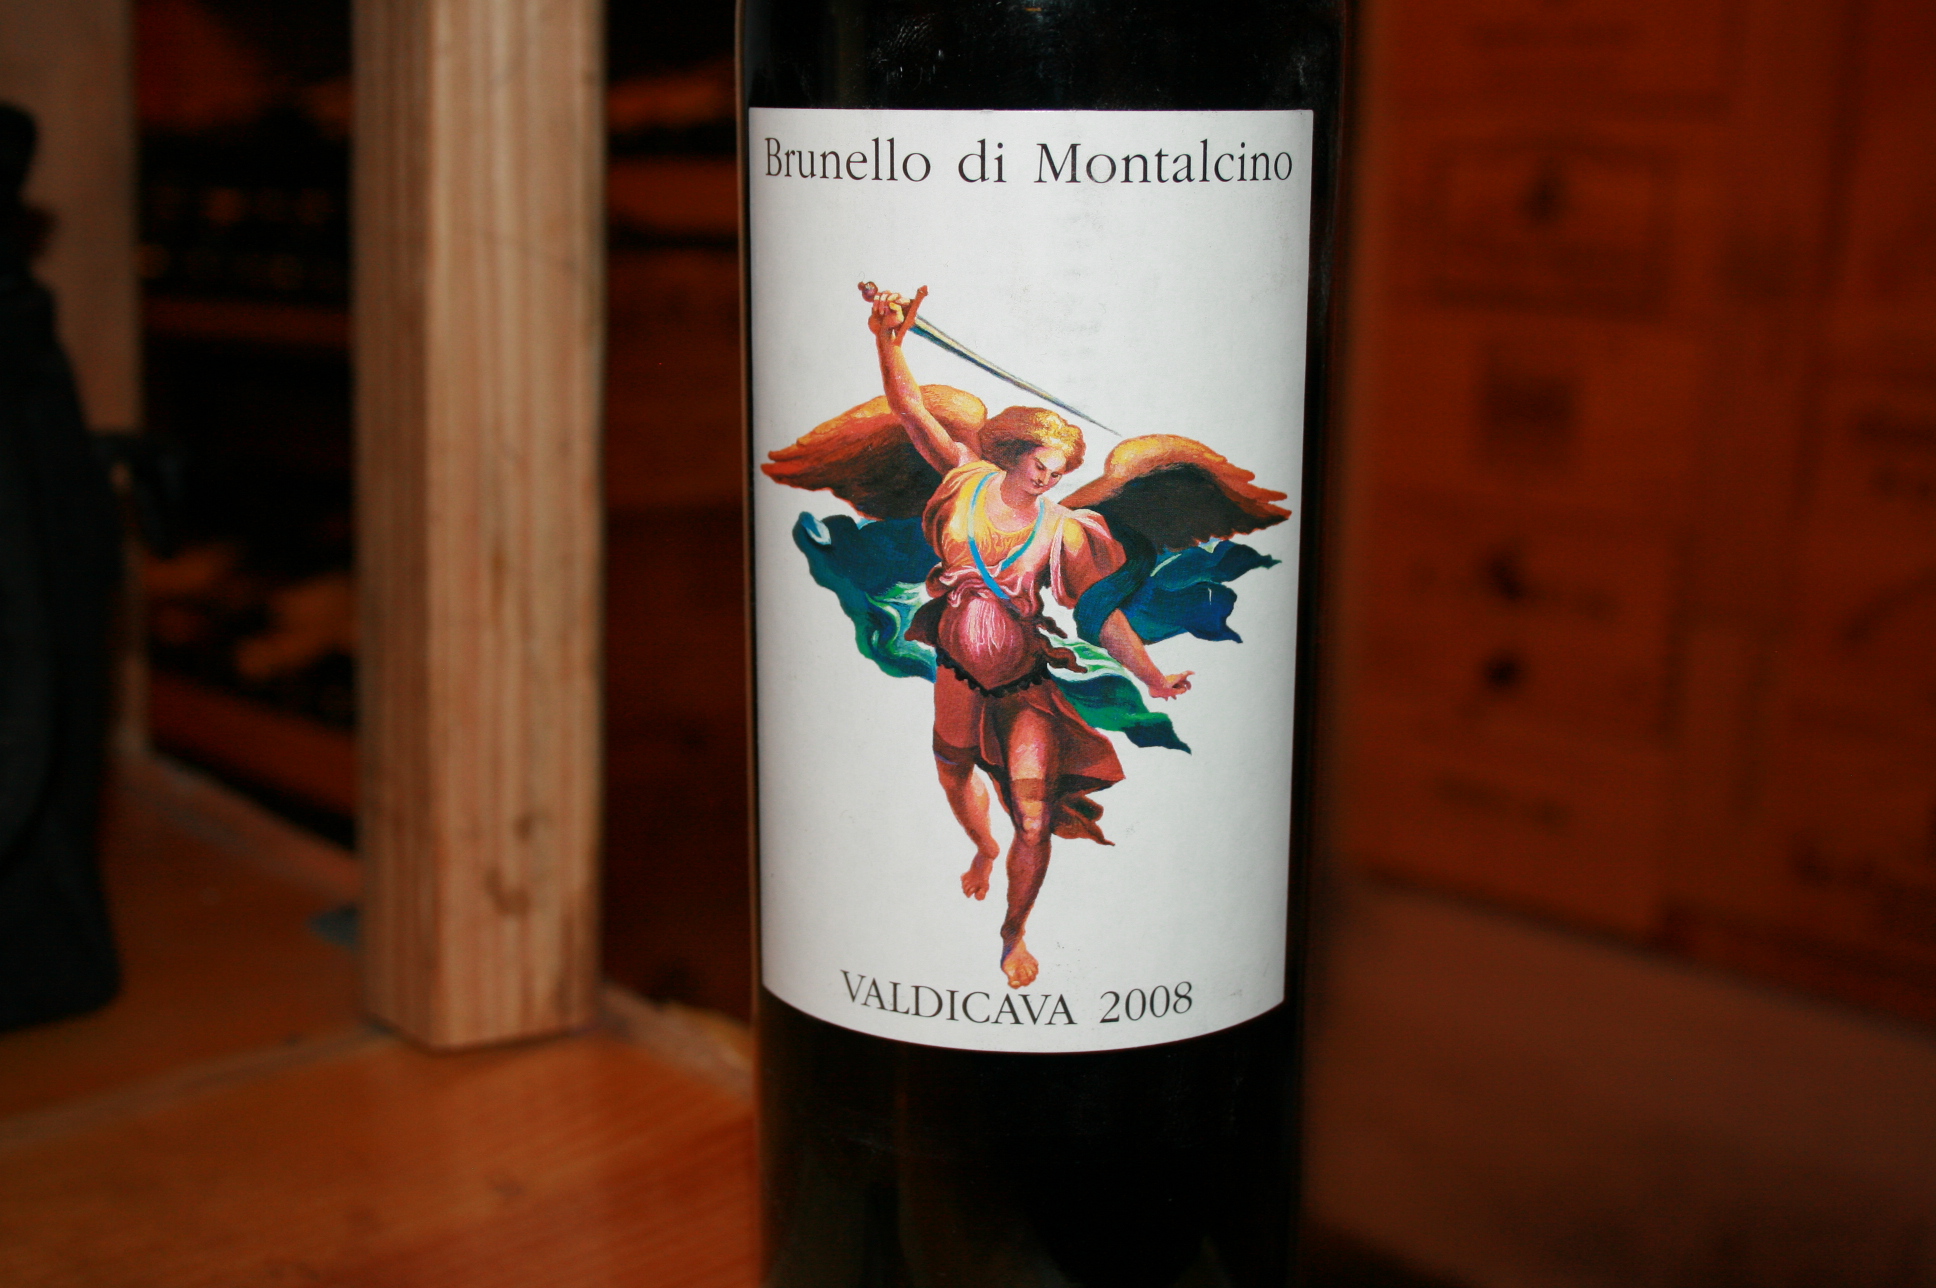 2010 Valdicava Brunello di Montalcino (3 Liter) - click image for full description